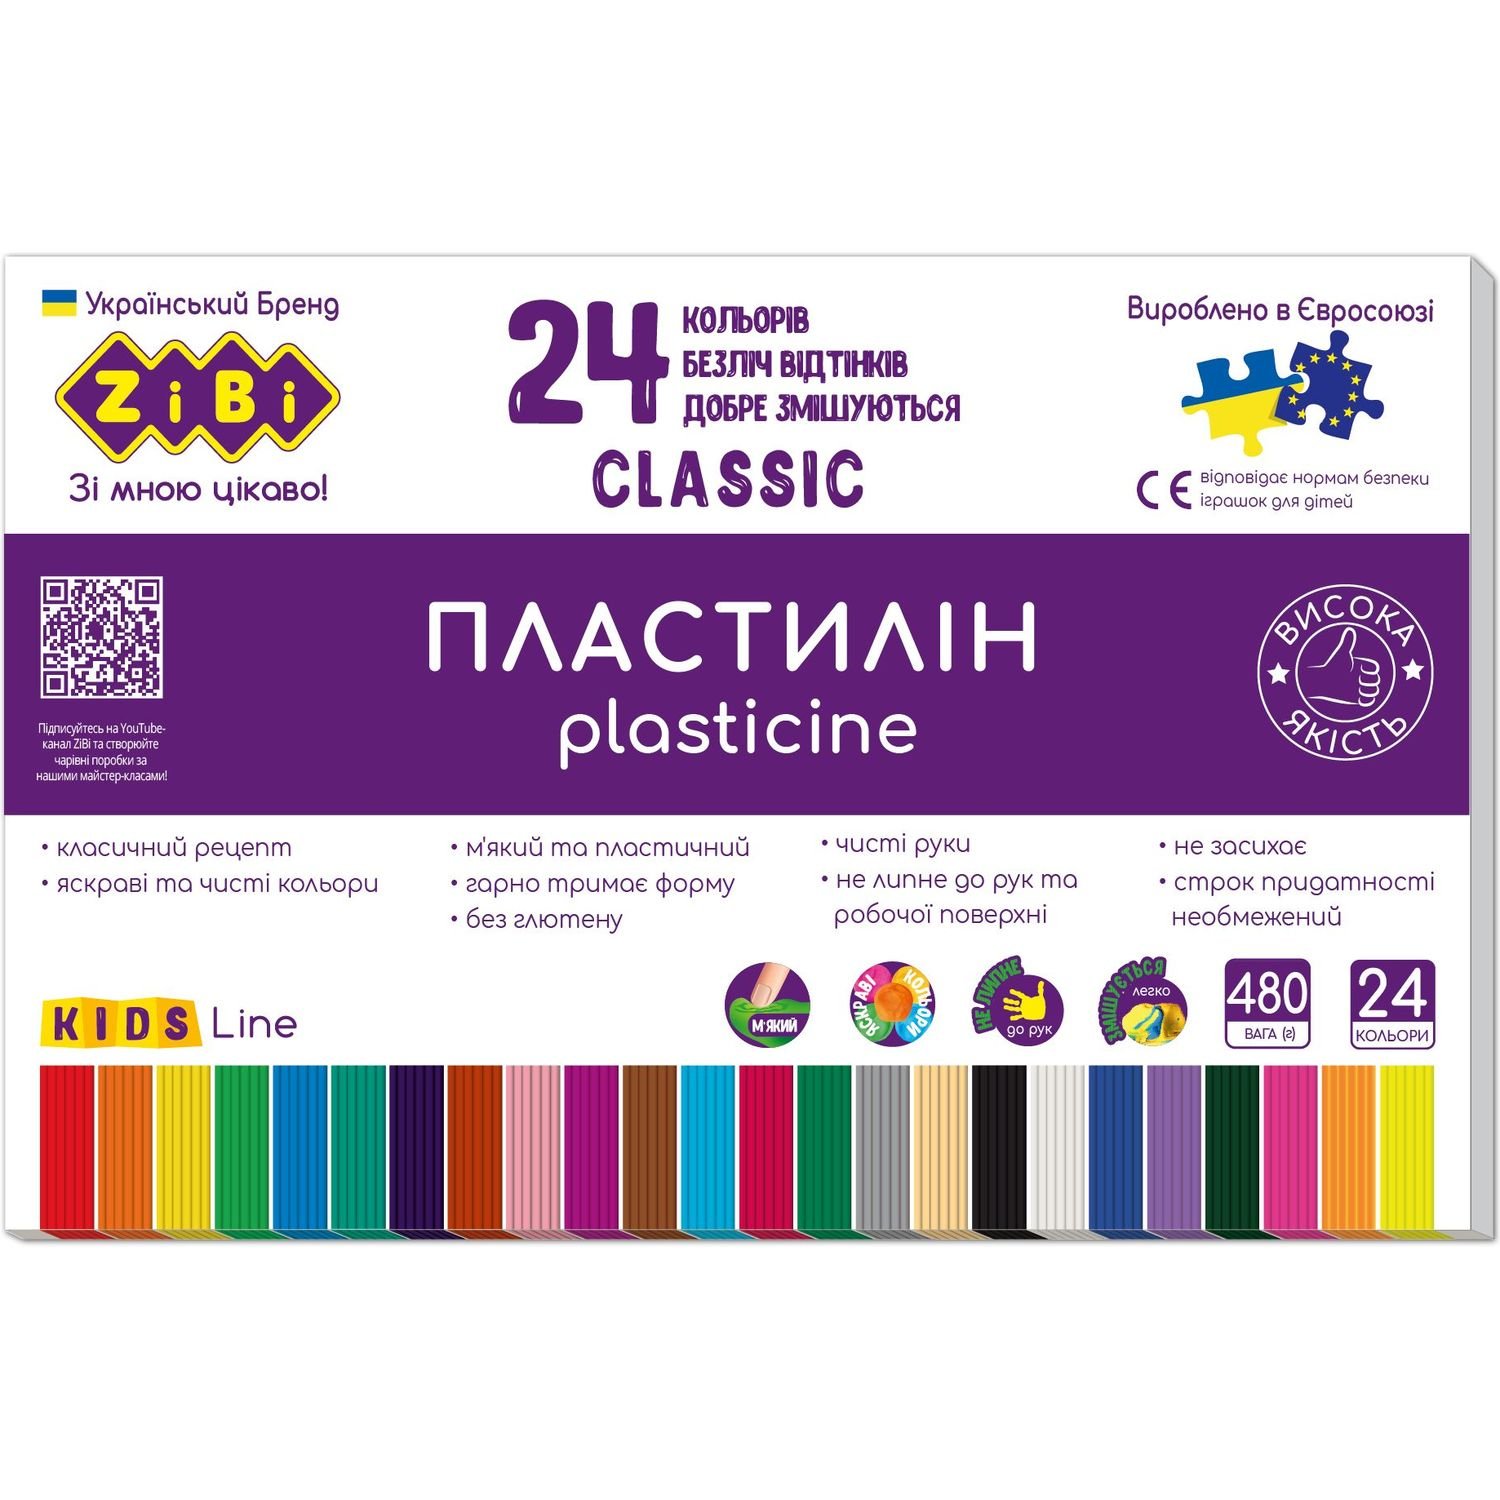 Пластилин ZiBi Kids Line Classic 24 цвета 480 г (ZB.6236) - фото 1